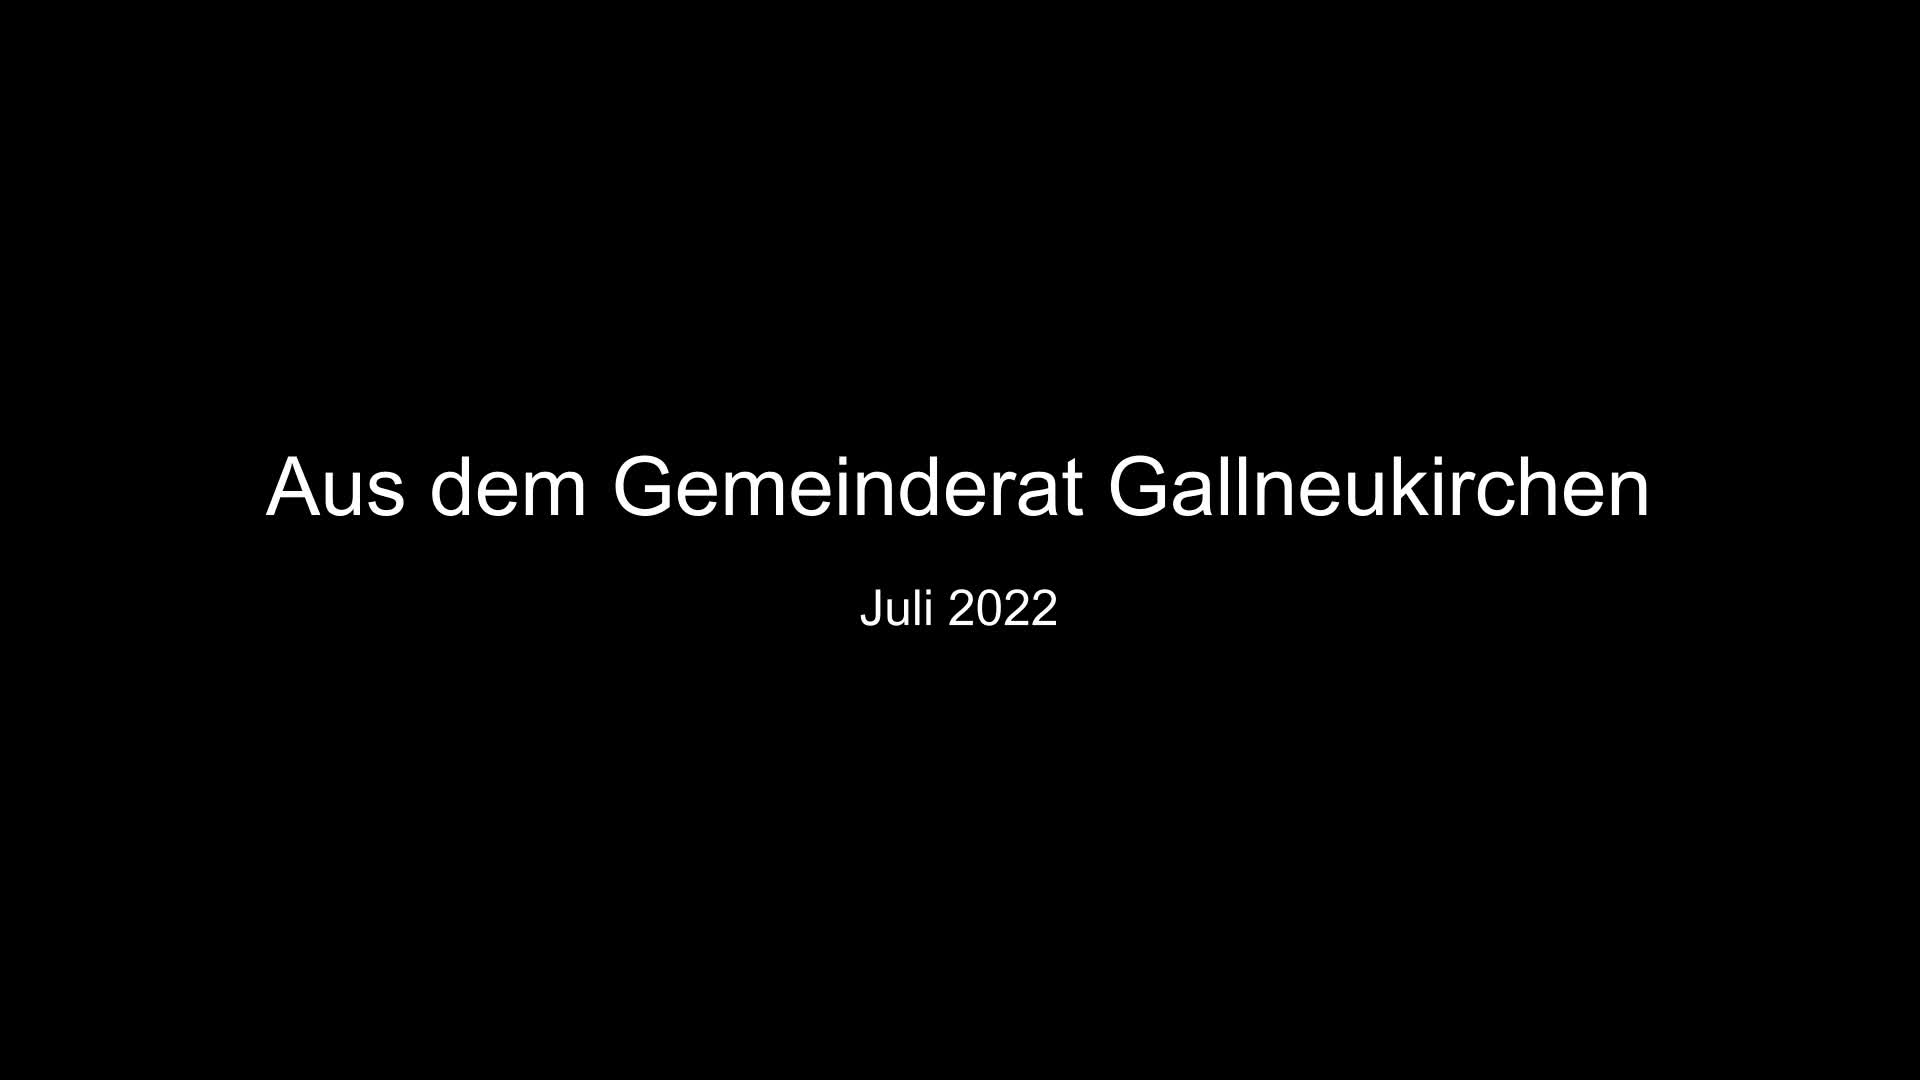 Aus dem Gemeinderat Gallneukirchen - Juli 2022